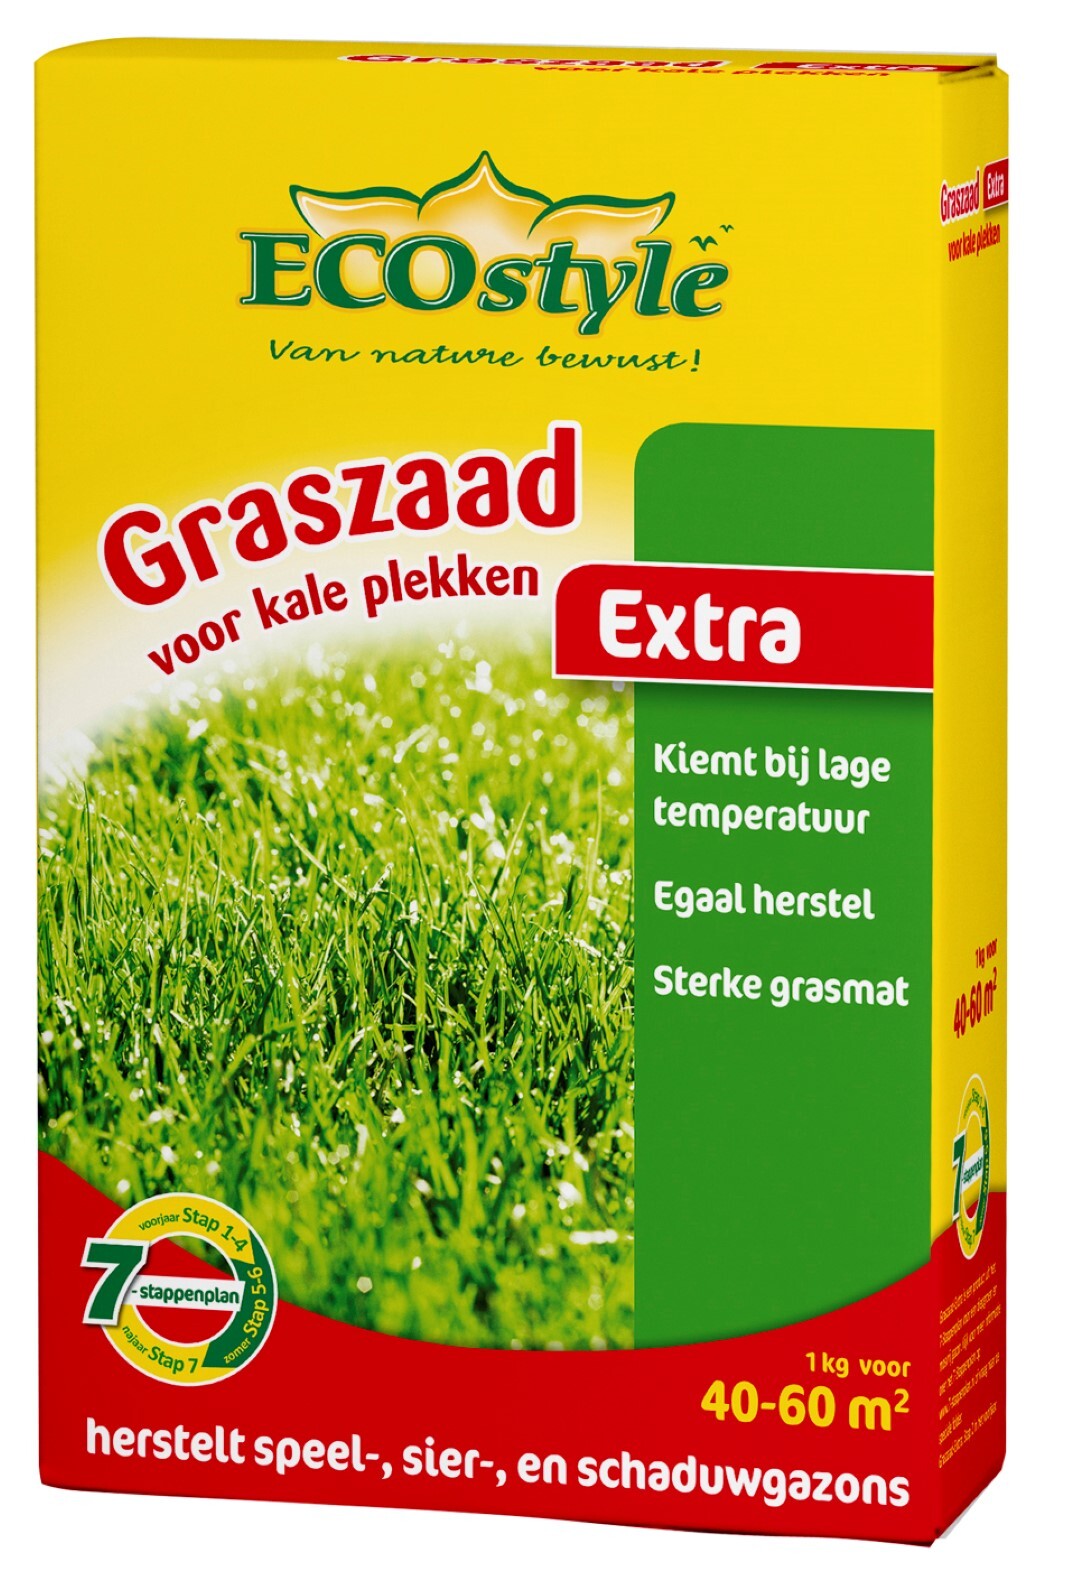 ECOSTYLE Graszaad-Extra - 1 kg - doorzaaien kale plekken - voor 40 tot 60 m2 Zaai kale plekken in met Graszaad-Extra